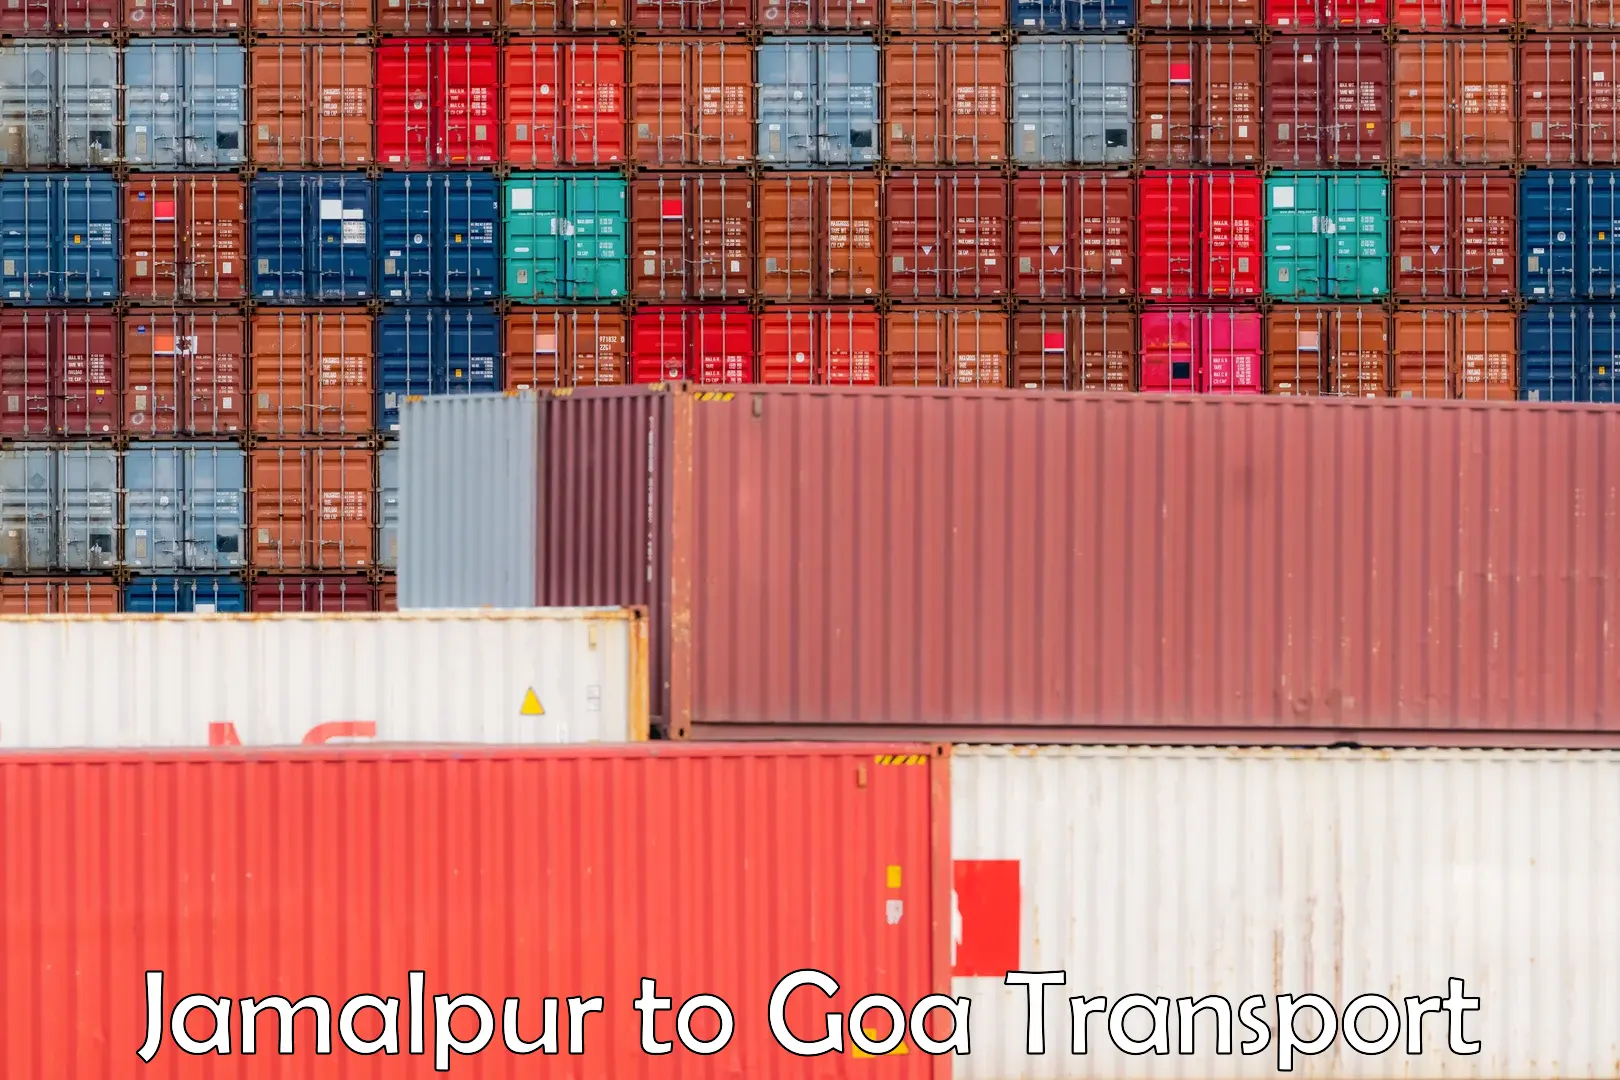 Container transport service Jamalpur to Vasco da Gama